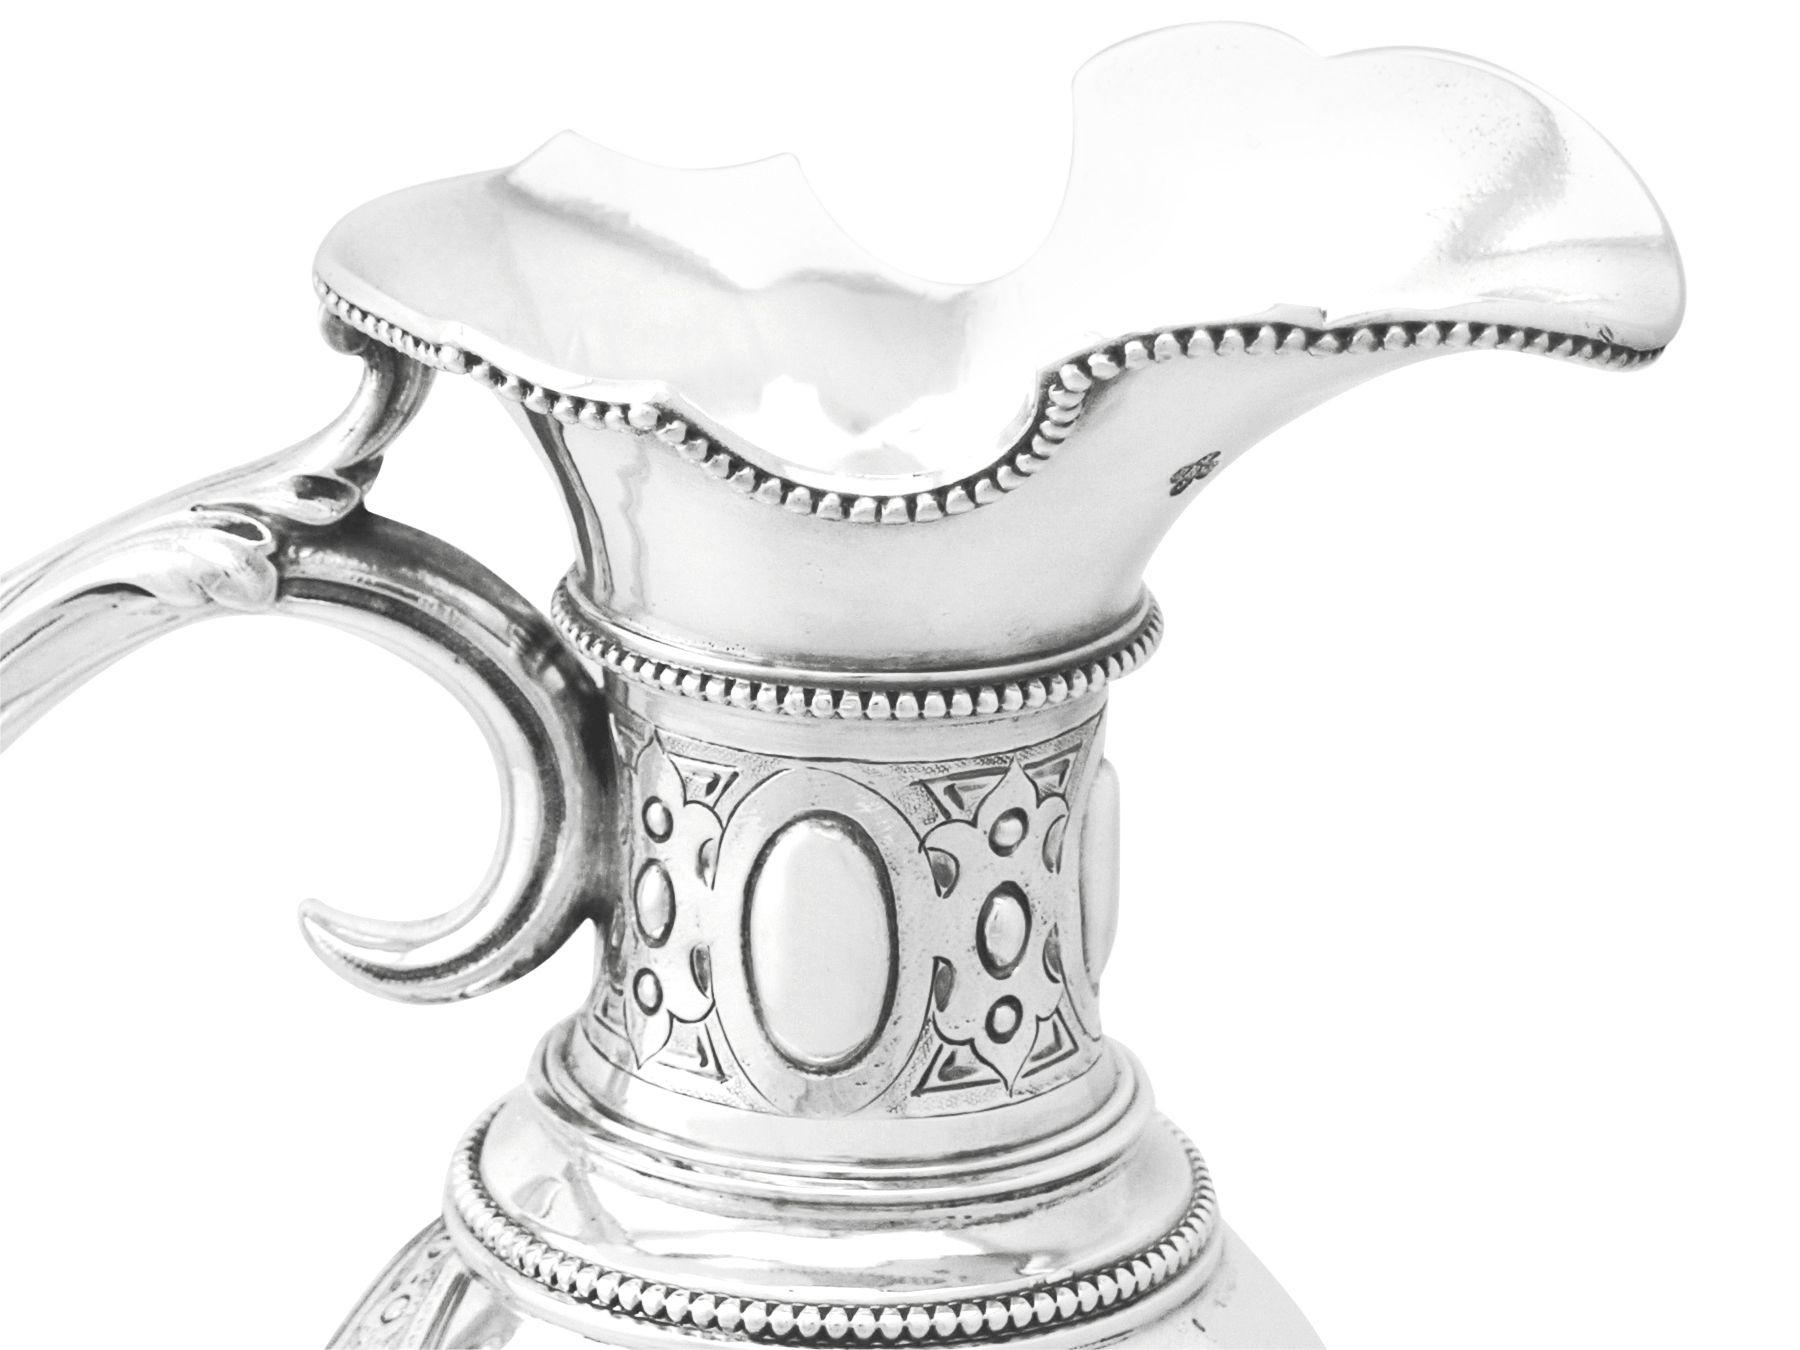 Barnard & Sons Ltd Antique Sterling Silver Claret Jug and Matching Goblets For Sale 1